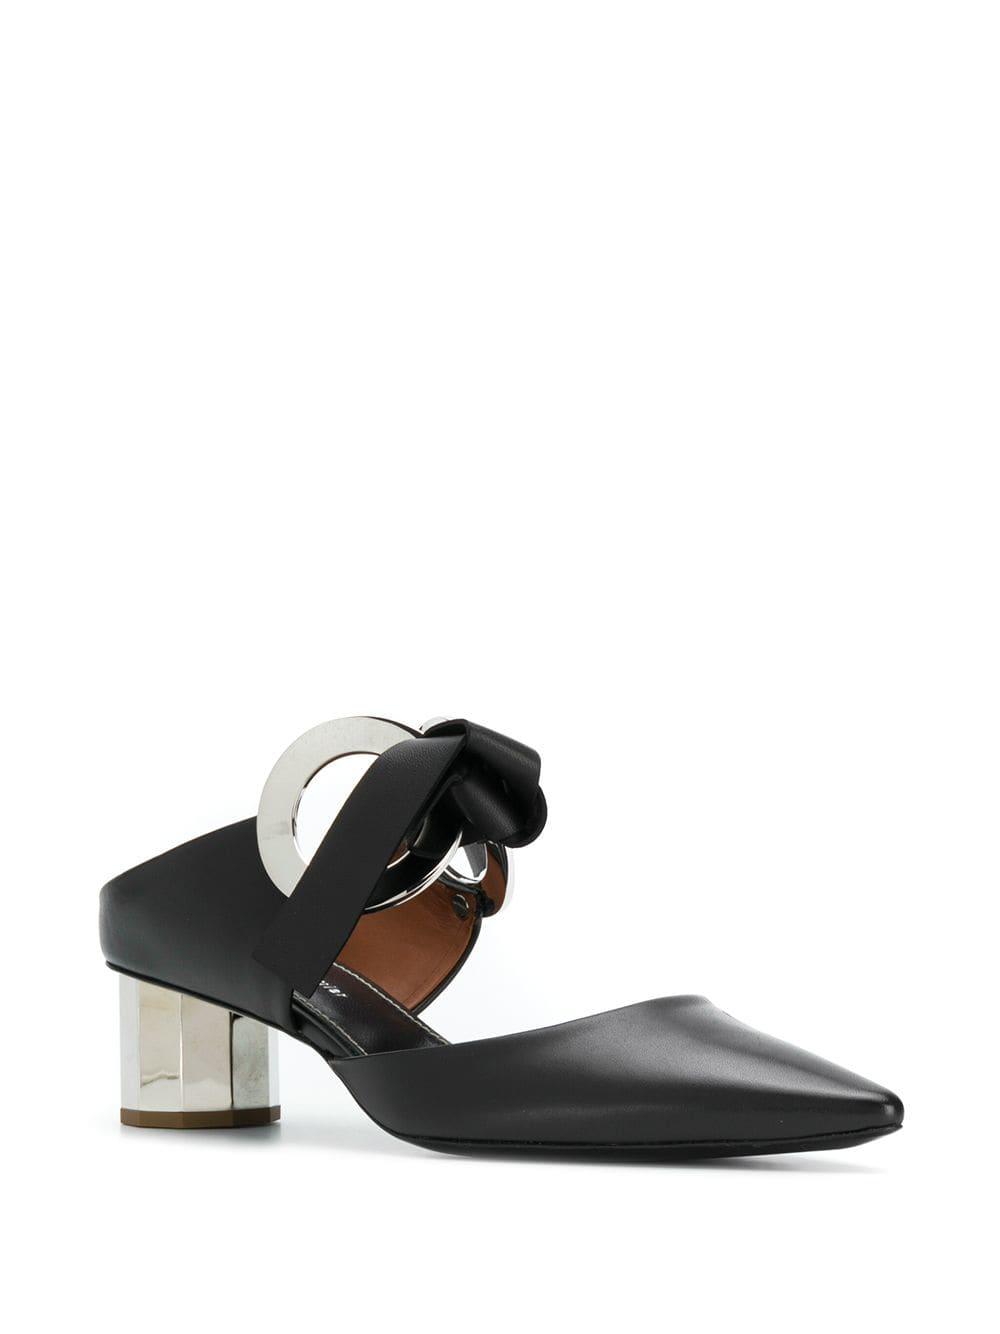 Proenza Schouler Leather Grommet Block Heel Mules in Black - Save 50%